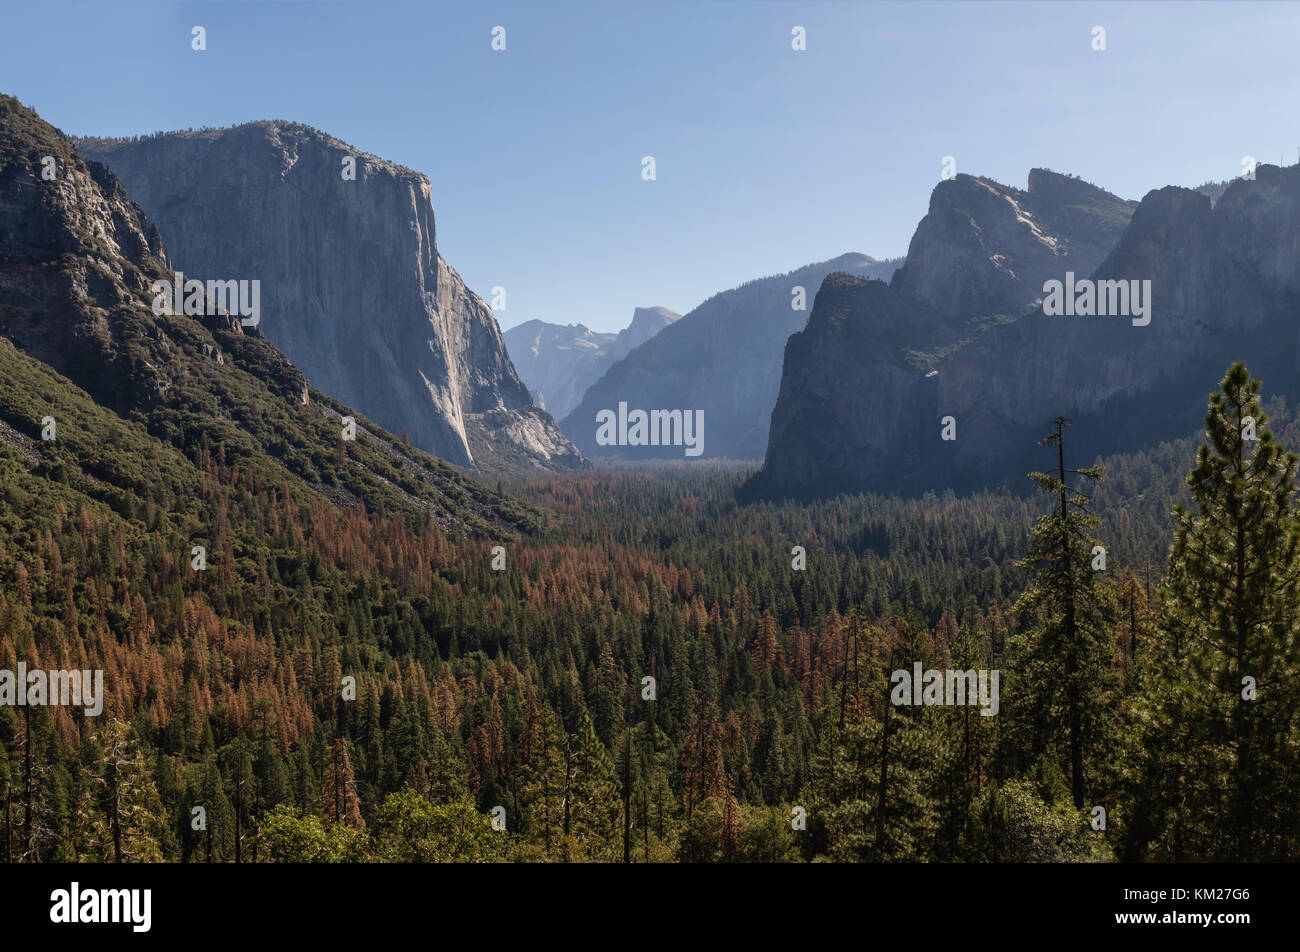 Célèbre vue de tunnel dans la vallée de Yosemite, Yosemite National Park, California, USA Banque D'Images